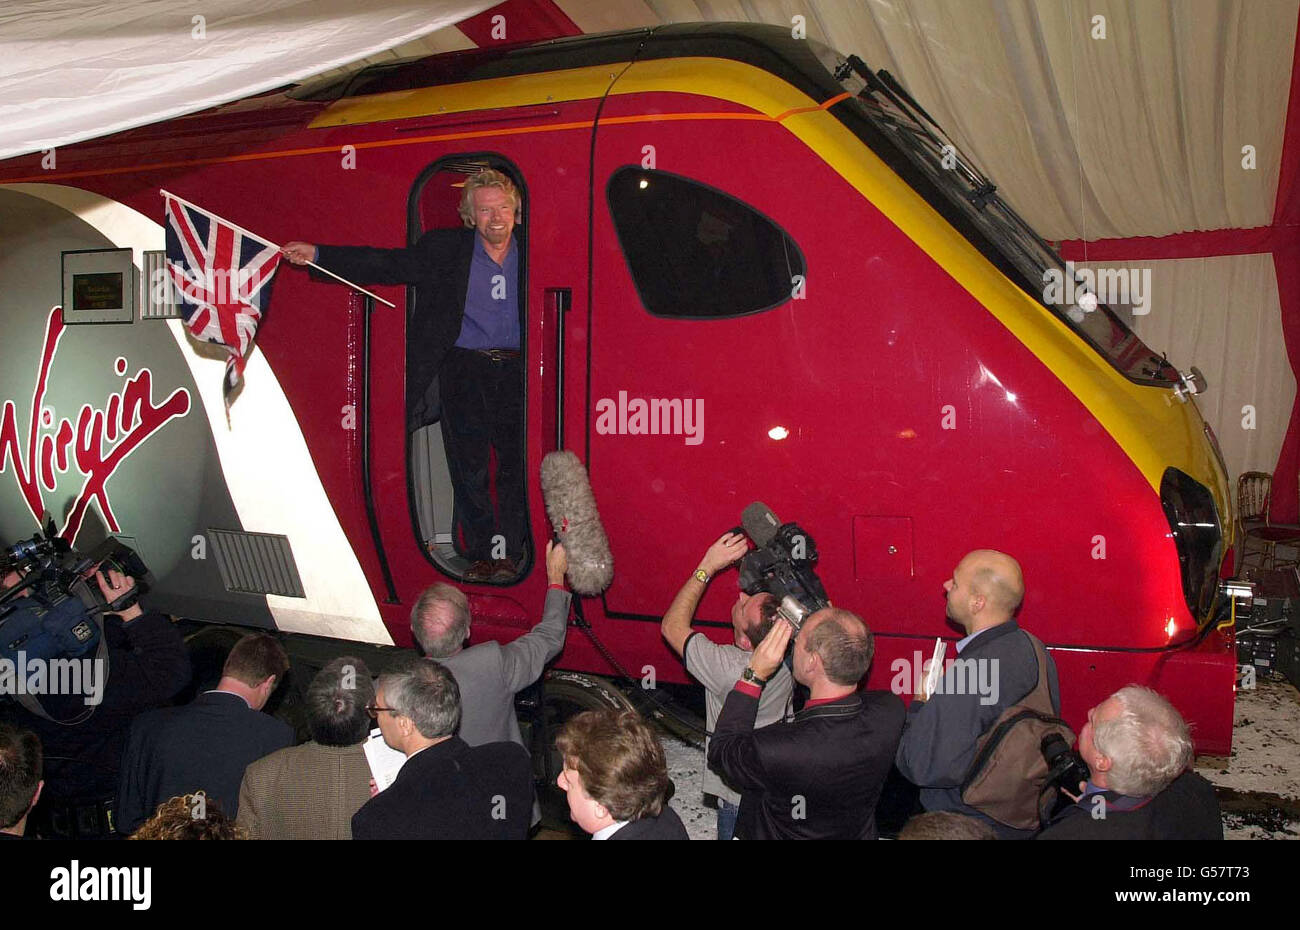 Sir Richard Branson sventola la bandiera dell'Unione durante il lancio del suo nuovo treno Virgin Maiden Voyager a Bruges, Belgio. *05/03/01 le tariffe ferroviarie sui treni Virgin aumenteranno di quasi il 10% a causa del disastro di Hatfield, ha confermato la società. I passeggeri che hanno subito mesi di ritardi sulla rete ferroviaria dovranno pagare i prezzi dei biglietti aumentati a partire da maggio. Virgin ha dichiarato di deplorare l'aumento e di incolpare Railtrack per non aver fornito un adeguato risarcimento per i disagi causati dal crash di Hatfield. Foto Stock